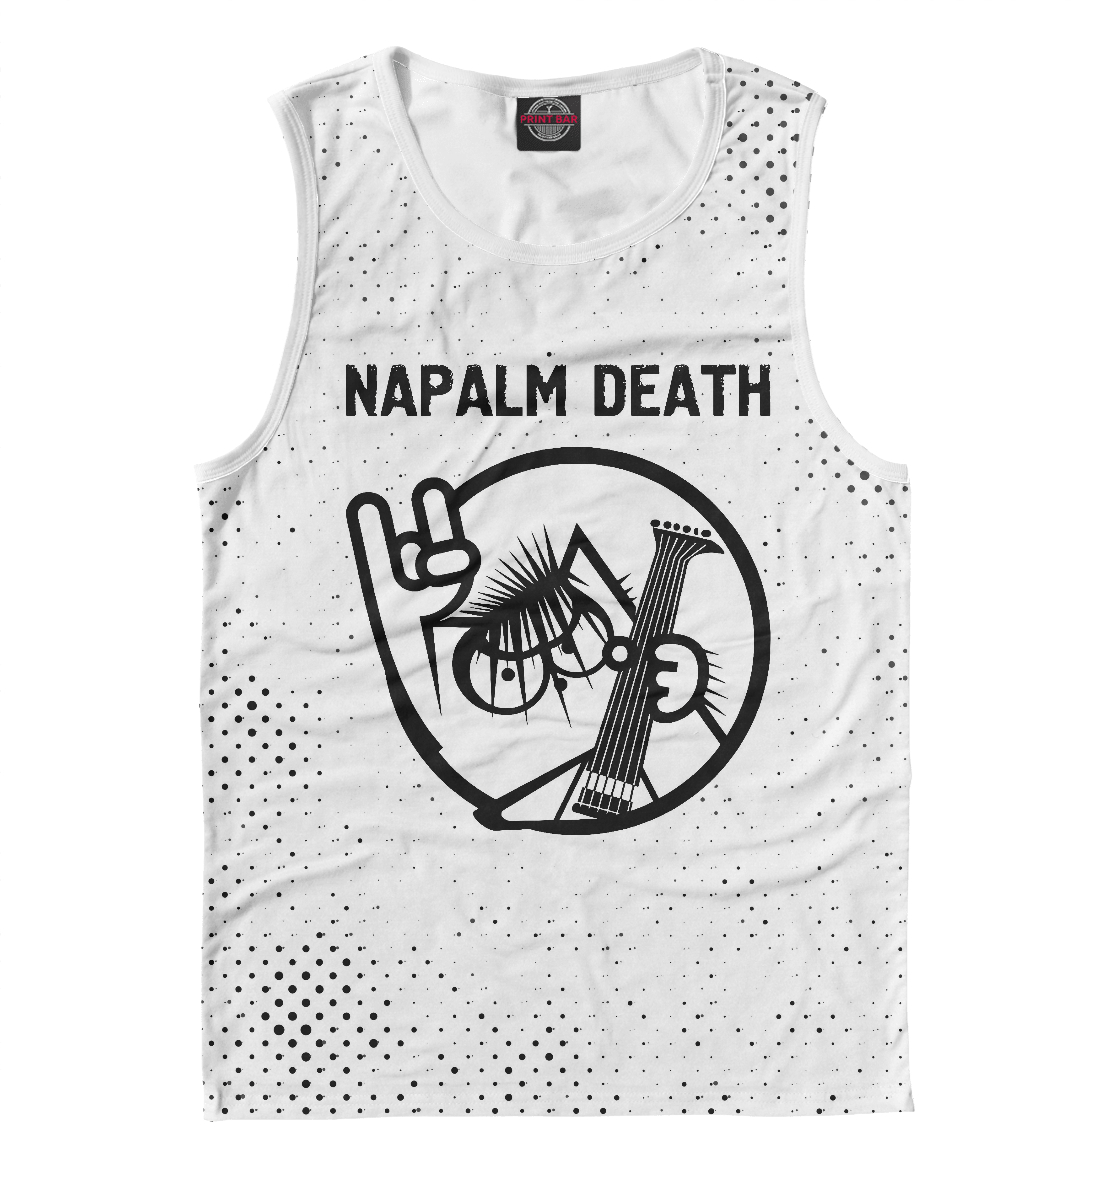 

Napalm Death / Кот